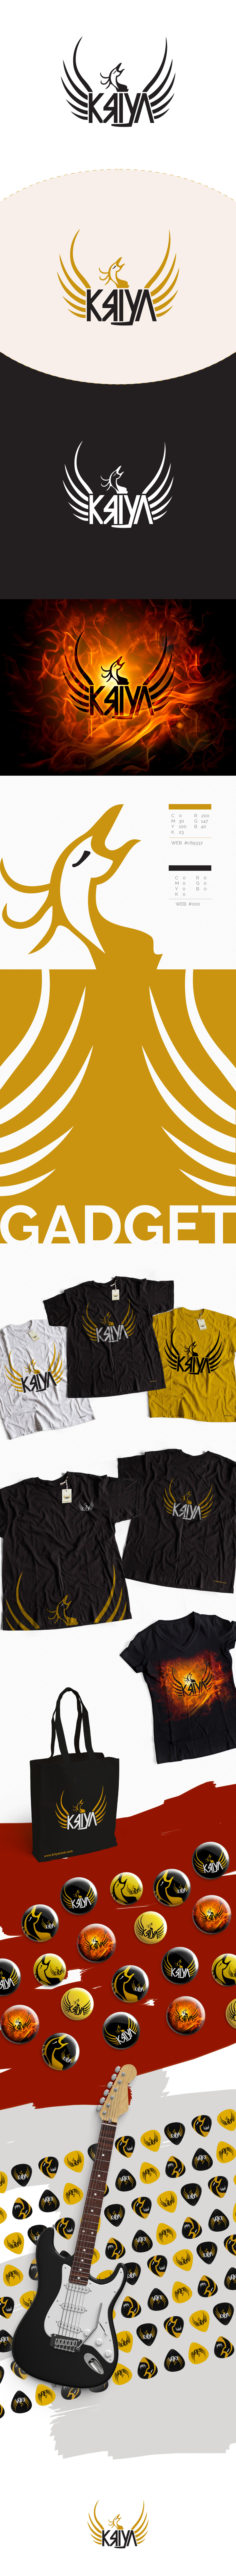 Logo Design logo music metal rock MUSIC GADGET Gadget